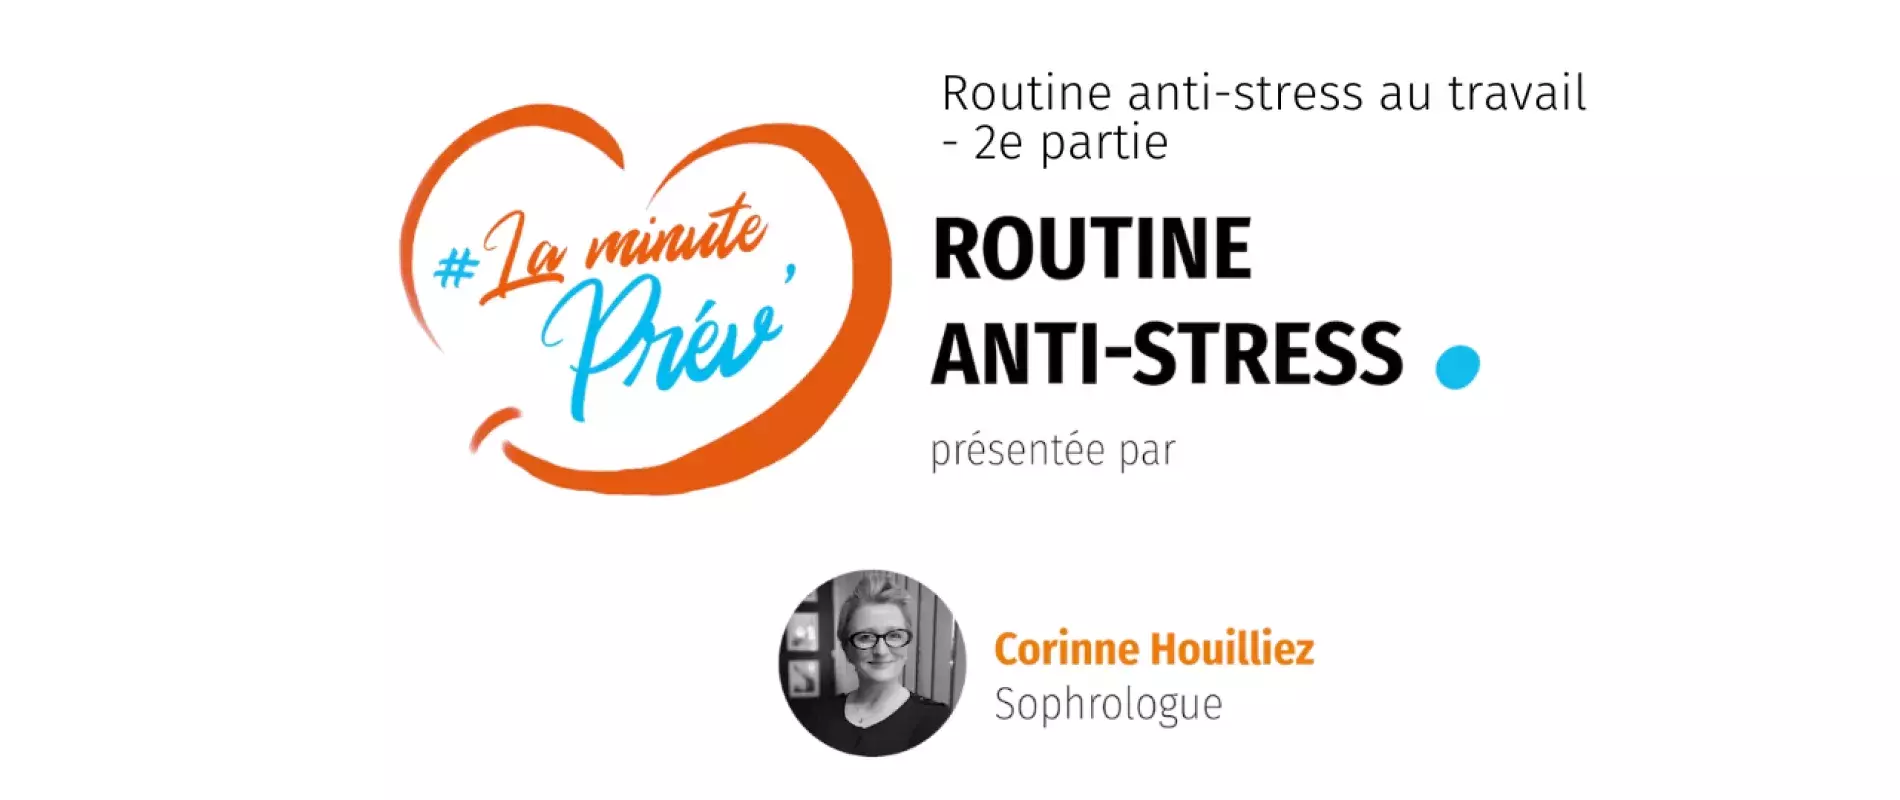 minut prev routine anti-stress 2